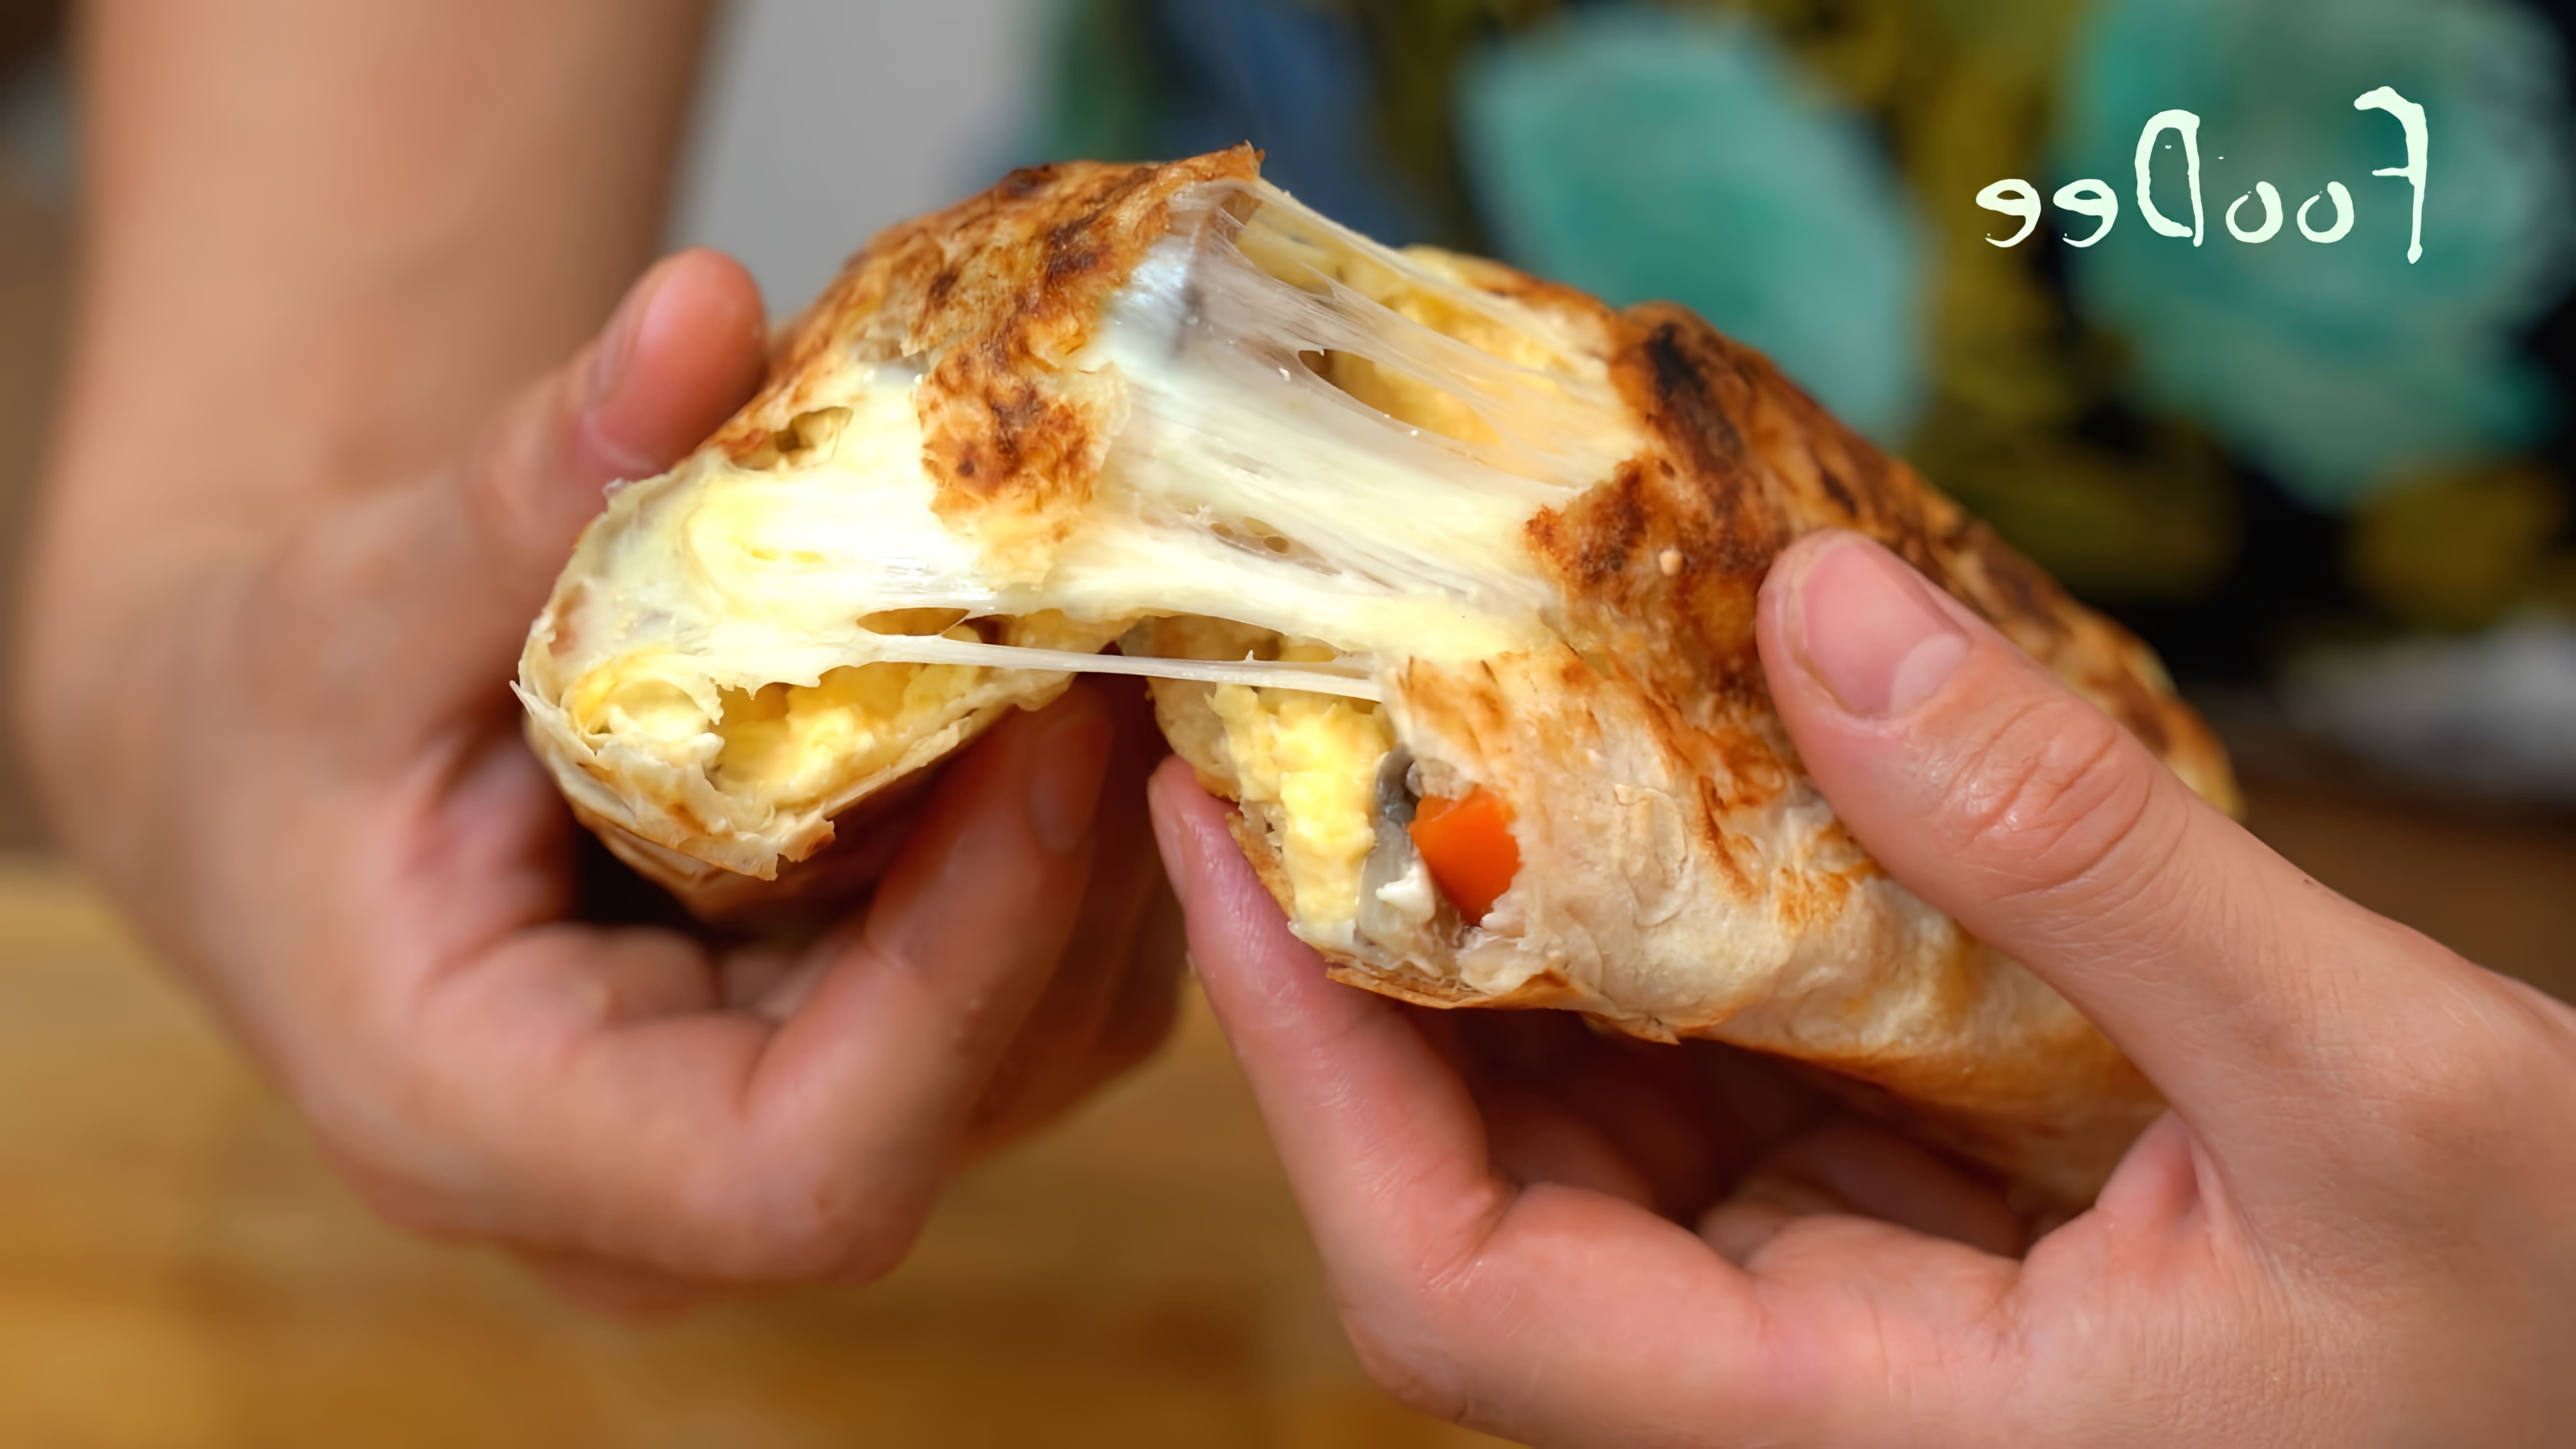 В этом видео демонстрируется рецепт приготовления завтрака из 6 яиц и лаваша